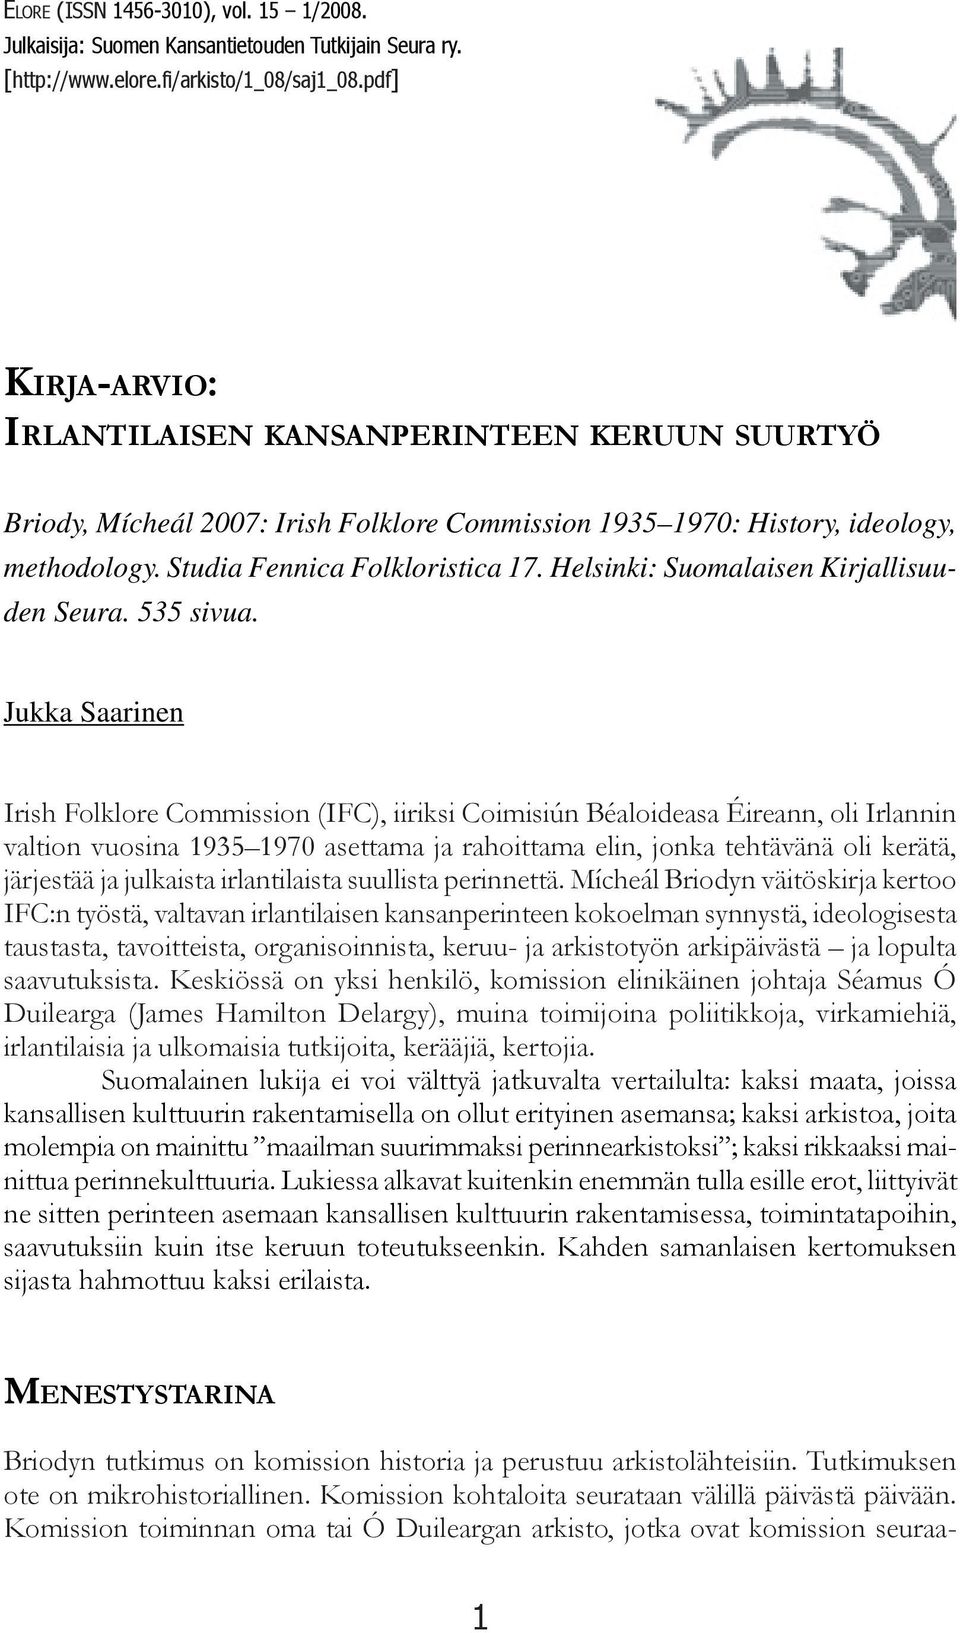 Helsinki: Suomalaisen Kirjallisuuden Seura. 535 sivua.